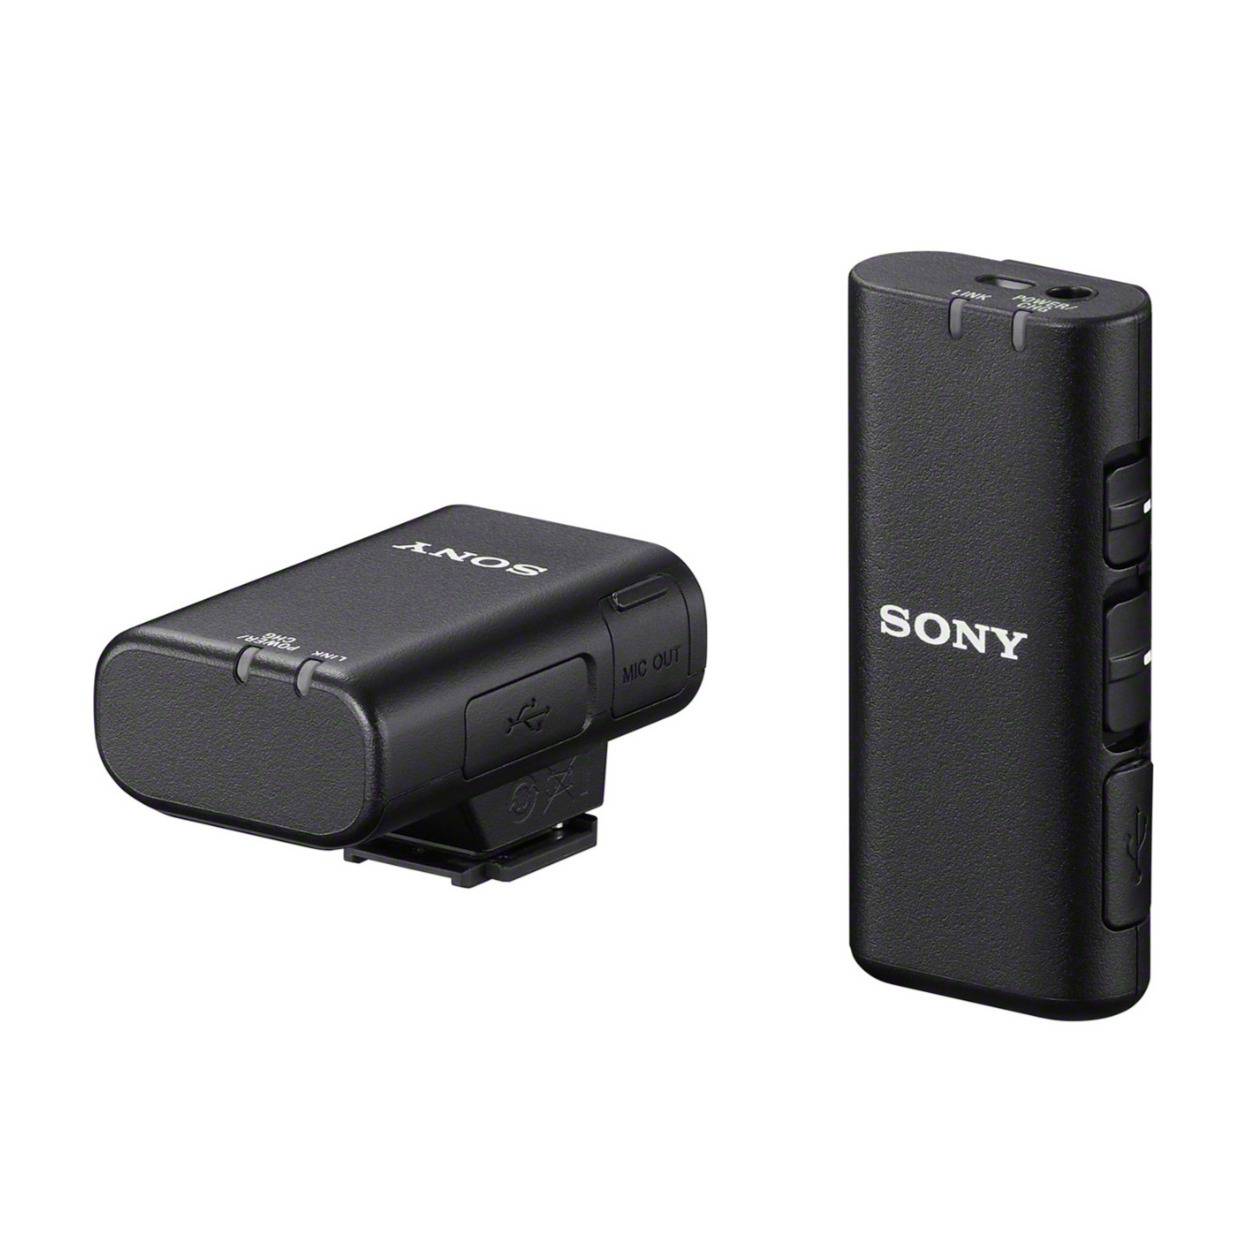 Sony ECM-W2BT Digital Bluetooth Wireless Microphone